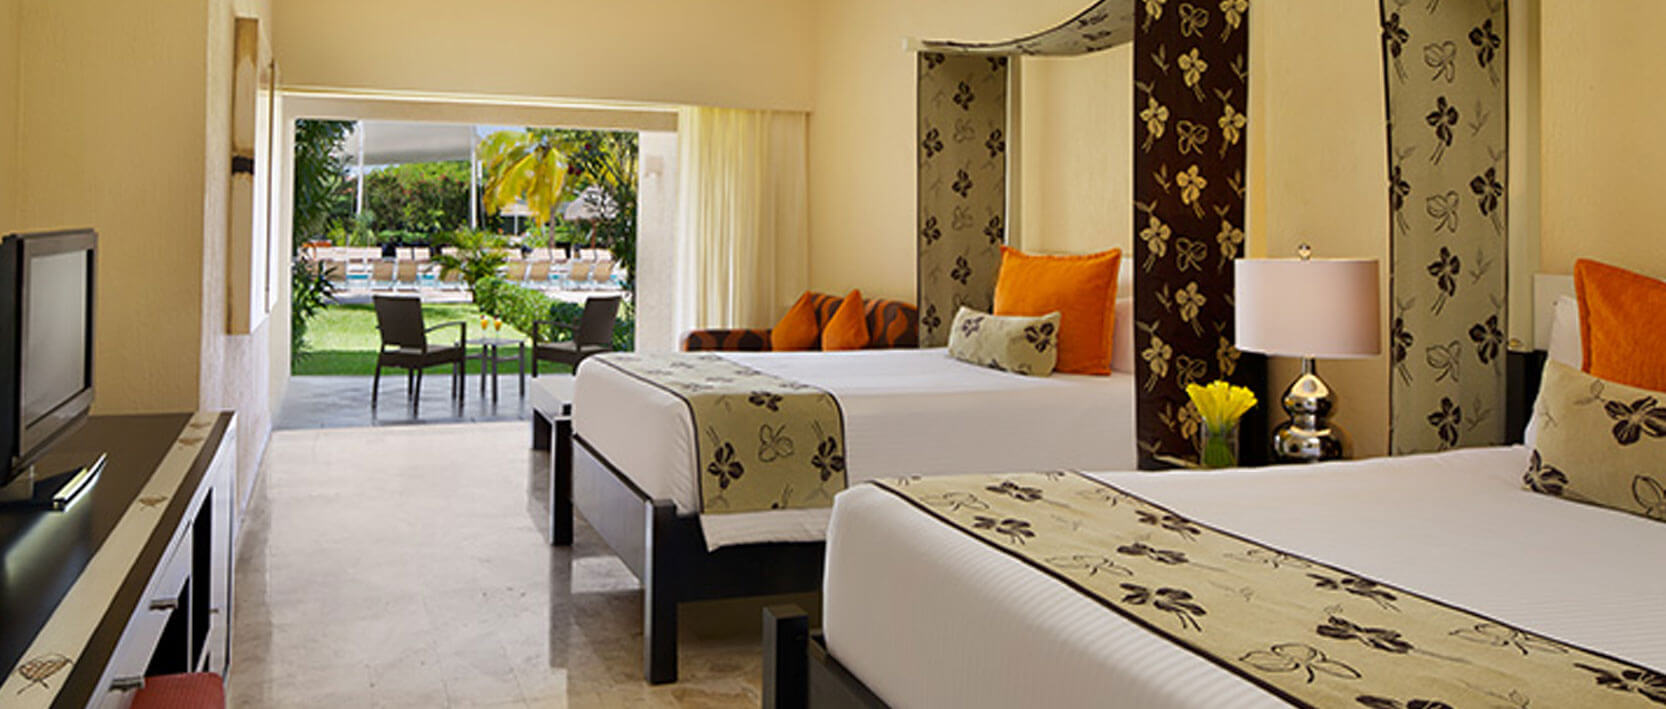 Dreams Puerto Aventuras Resort Accommodations - Family Suite Deluxe Garden View